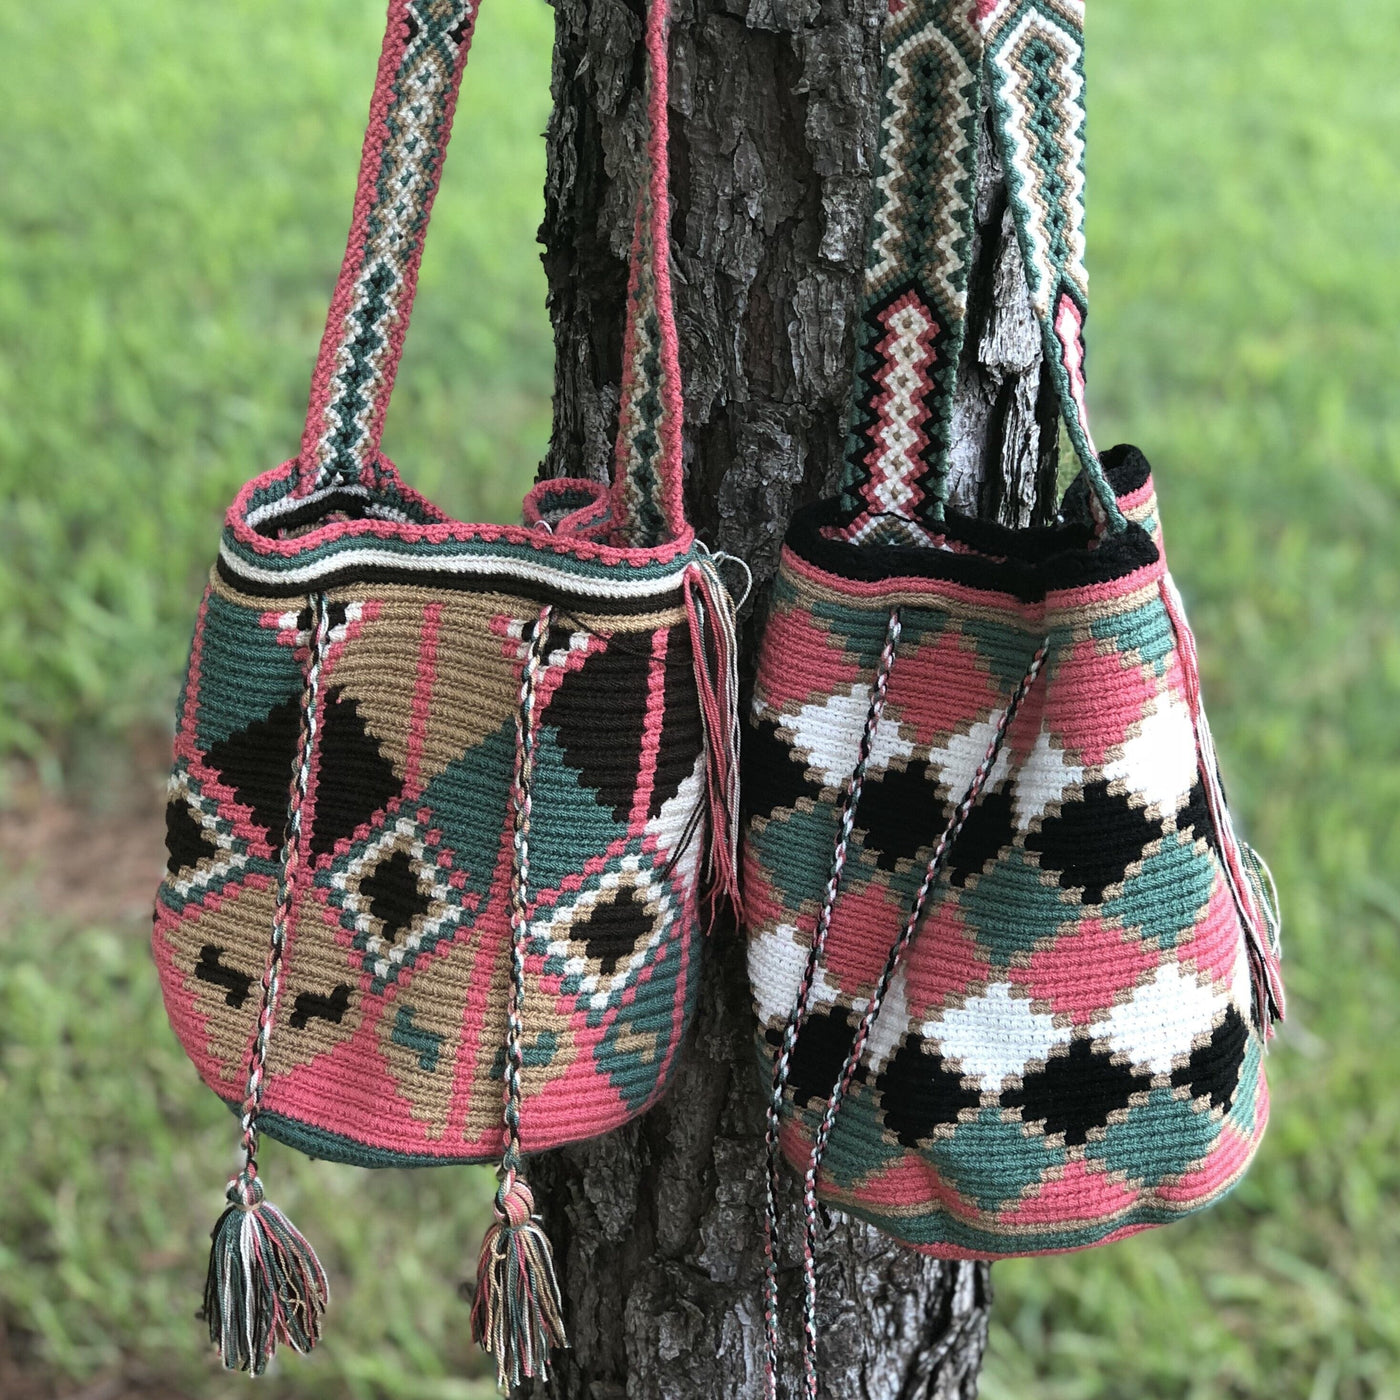 Fall Colors Medium Crochet Bags | Crossbody Earth Tones Bohemian Bag ...